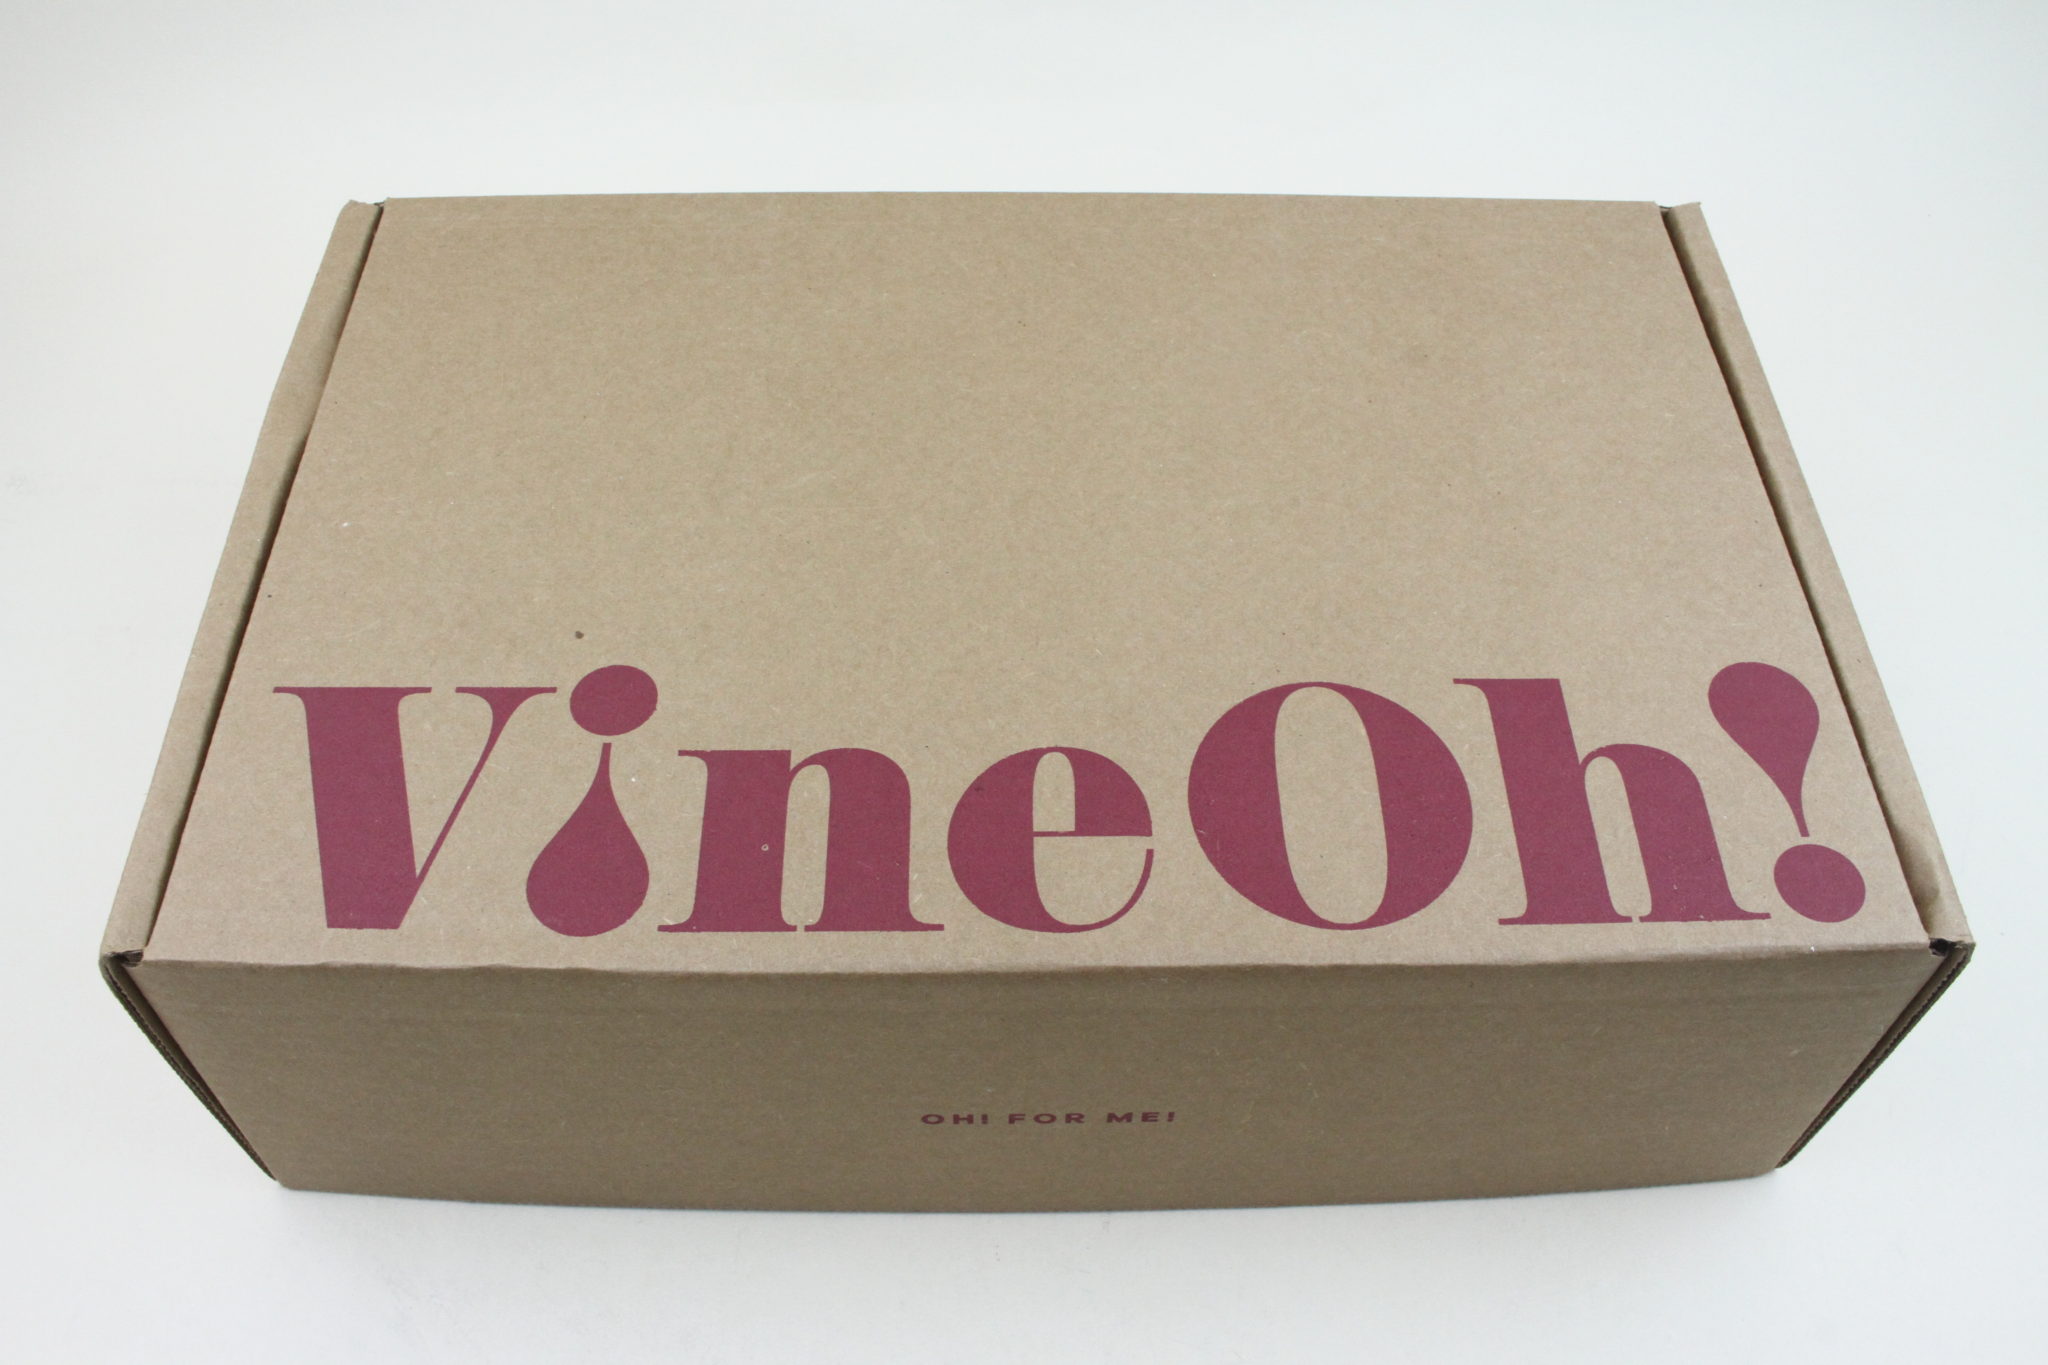 Vine Oh! - Oh! Ho Ho! Box Review